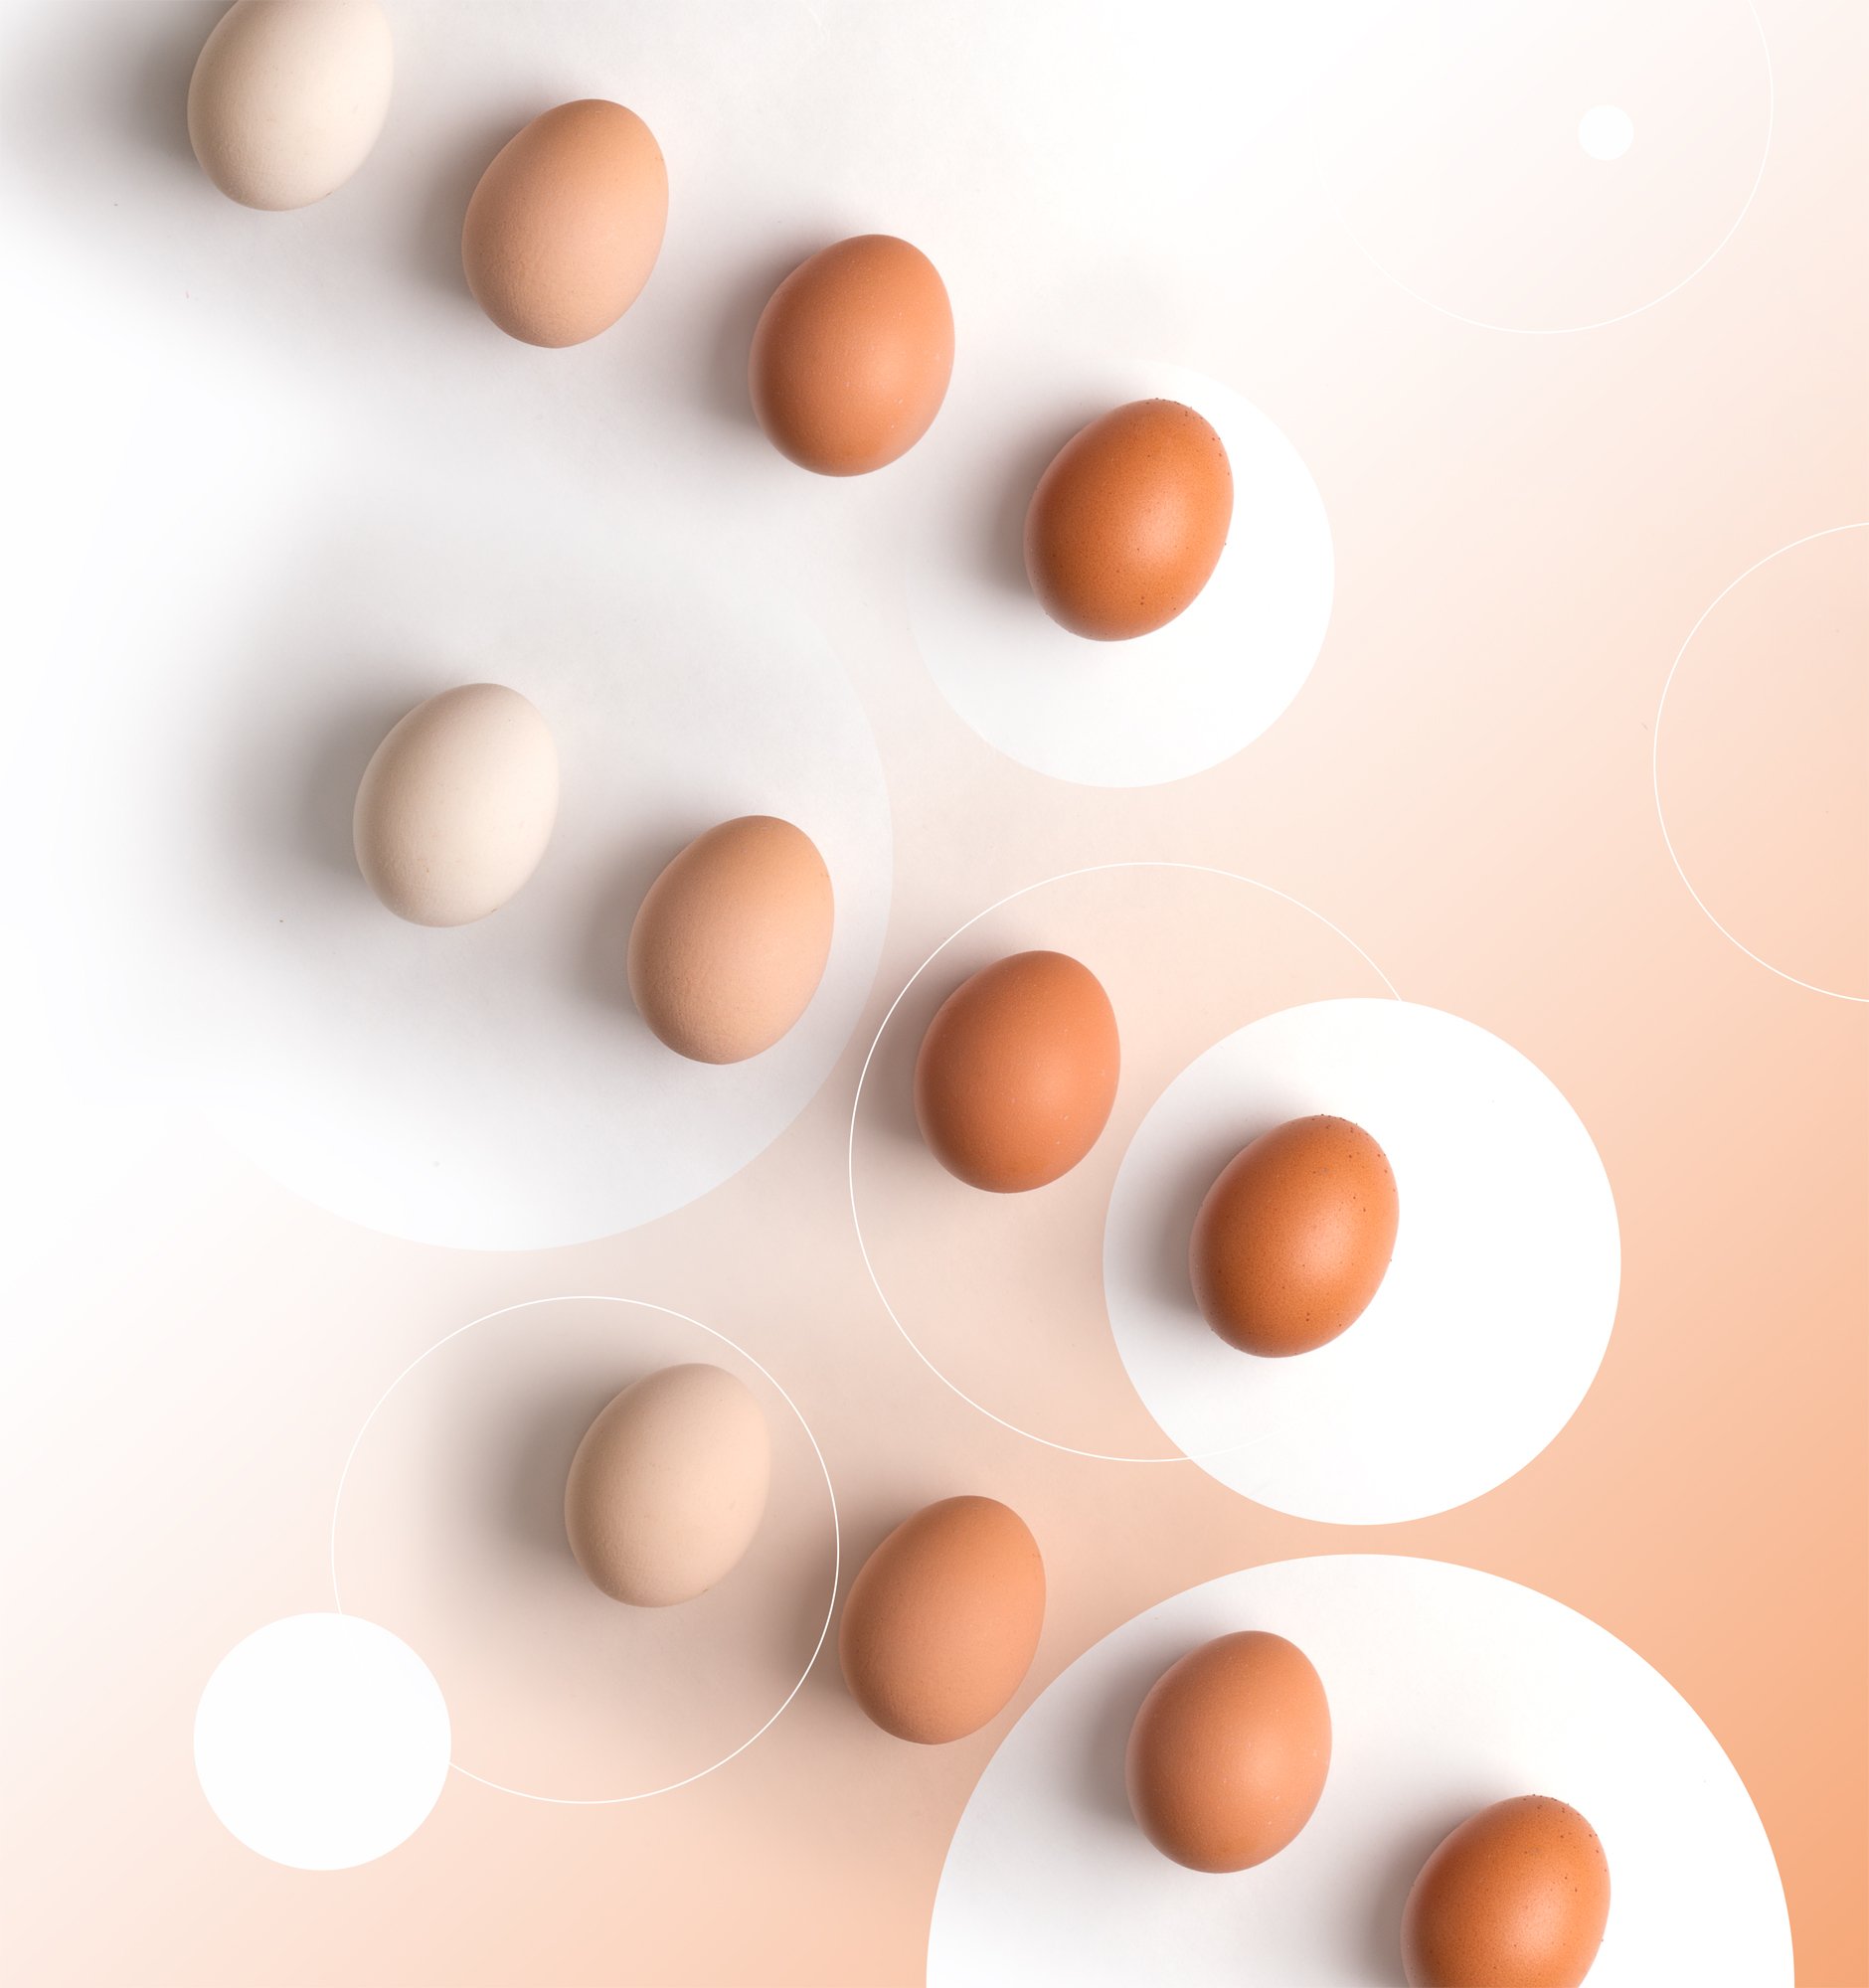 яйцо, яйца, тональность, оттенки, вид сверху, натюрморт, креативный, концепт, Наталья Голубева